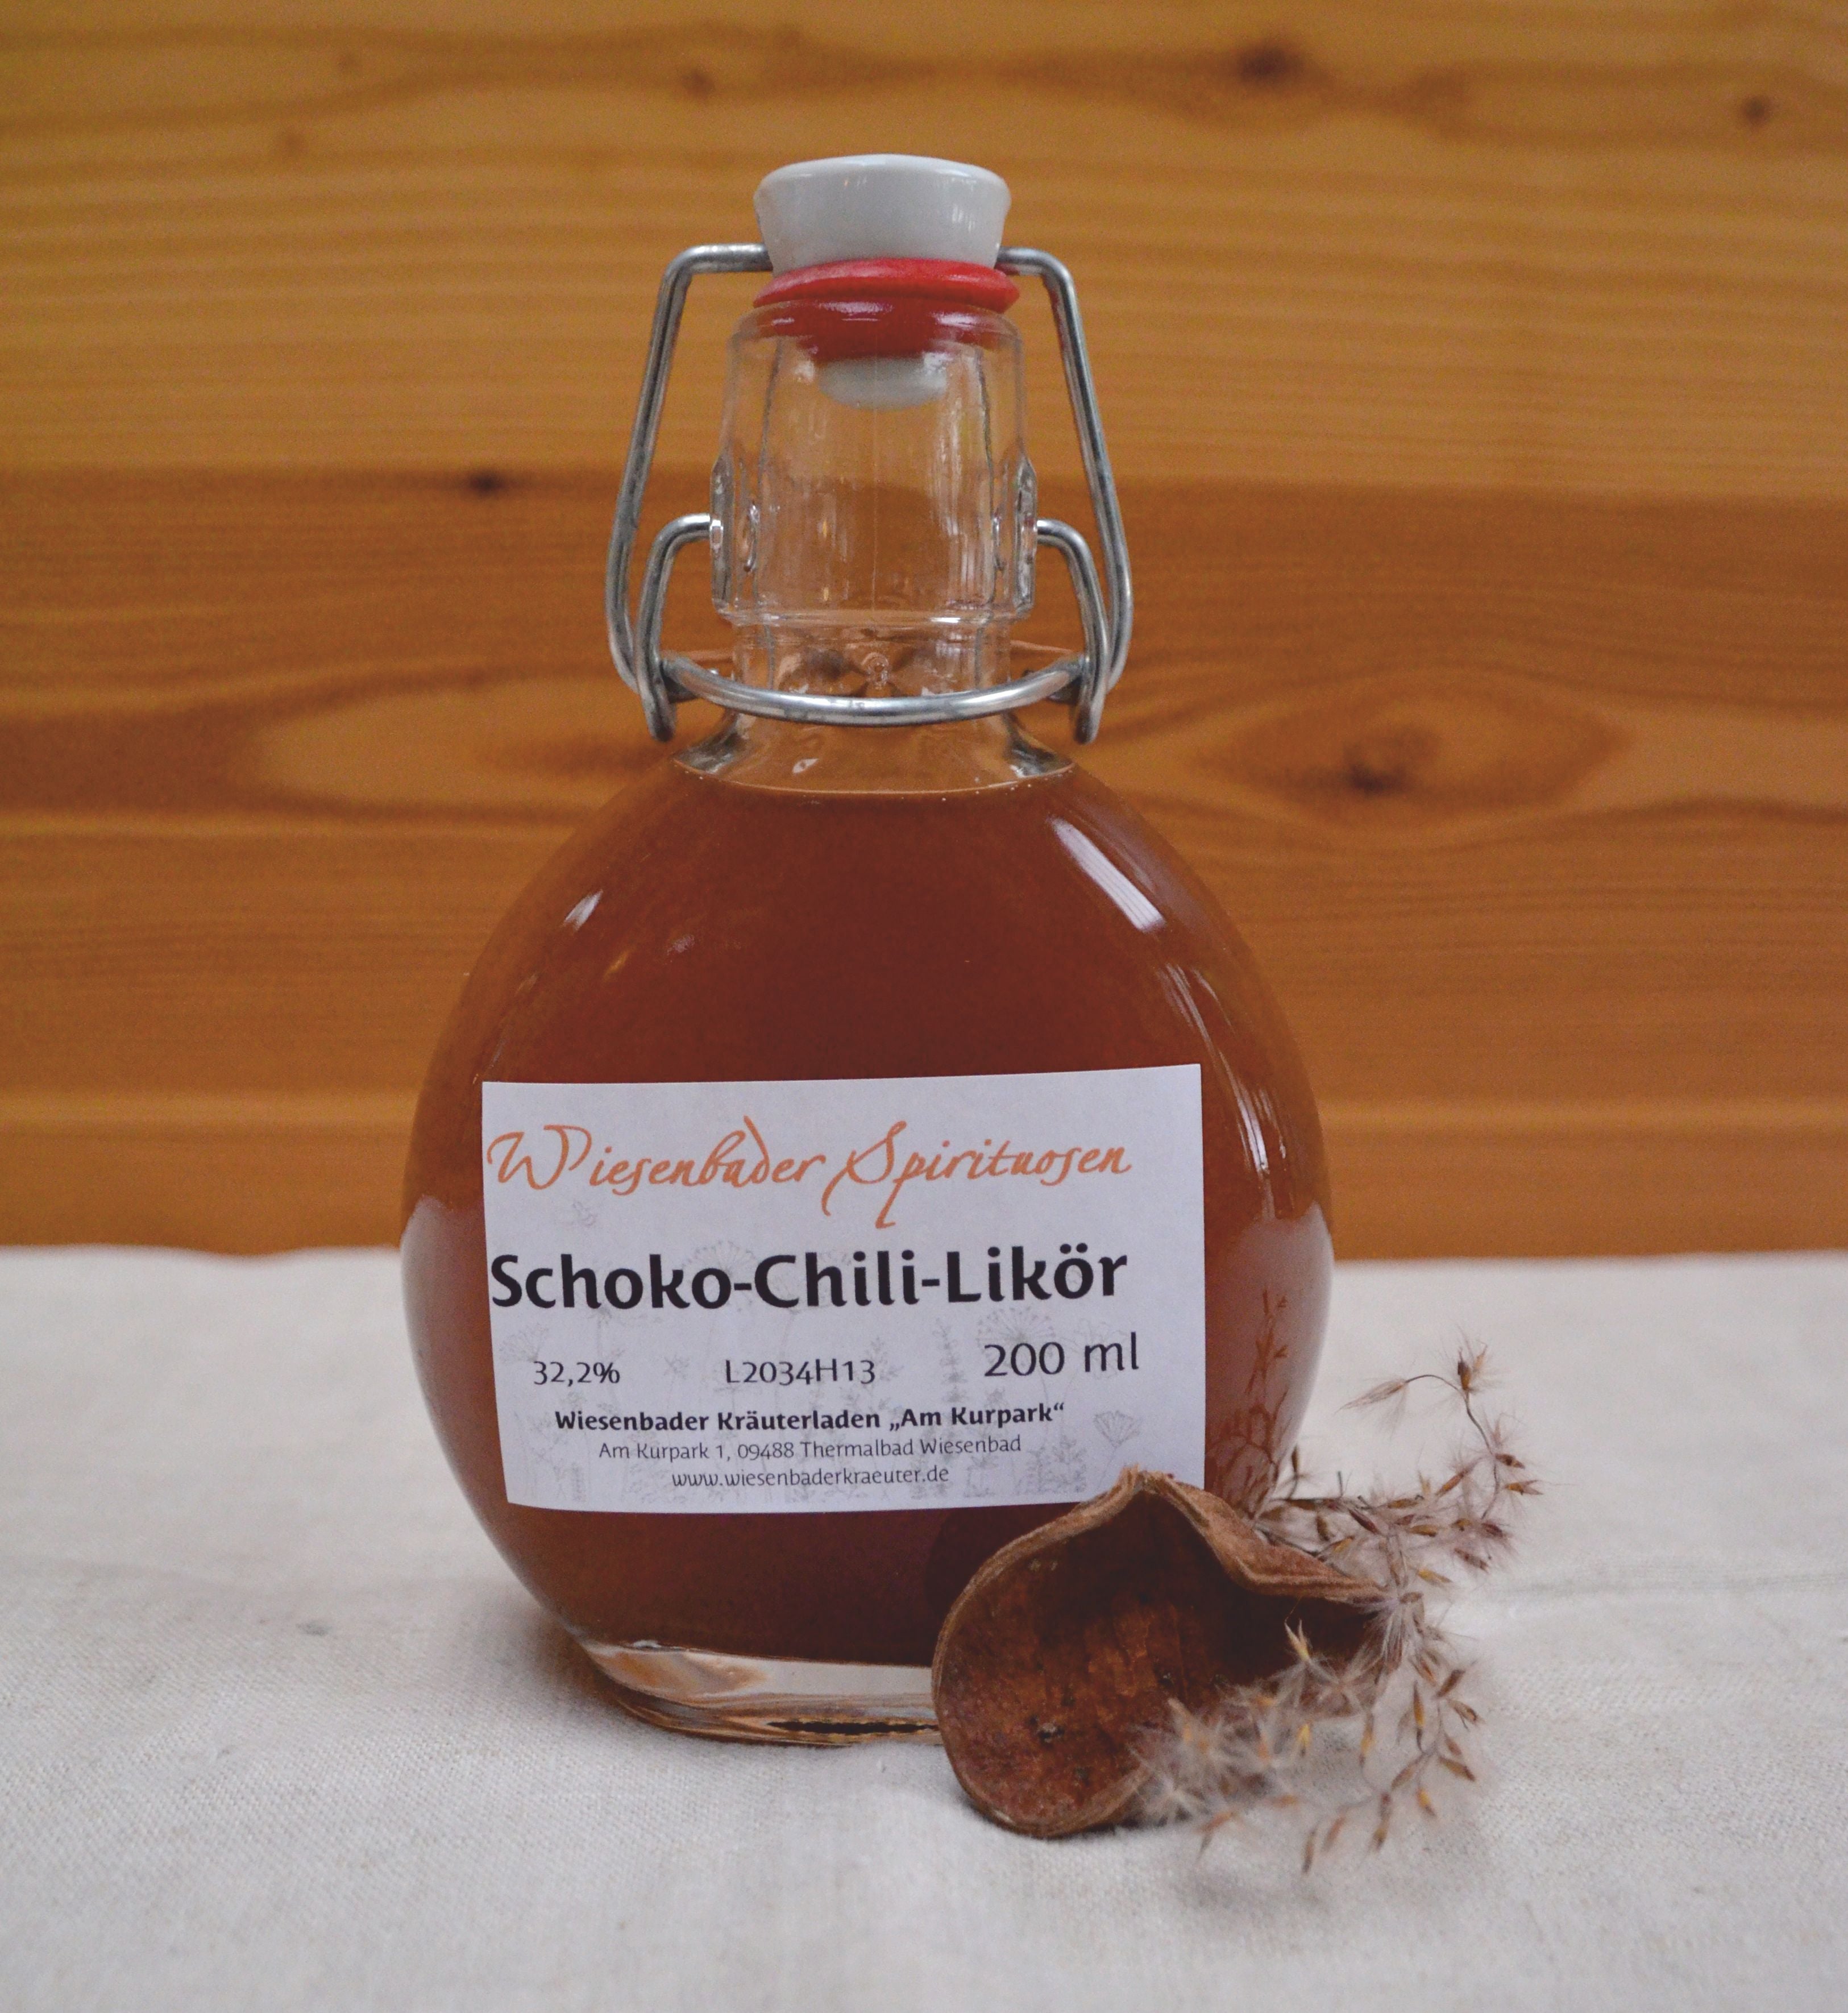 Schoko-Chili-Likör – Wiesenbader Kräuterladen *Am Kurpark*